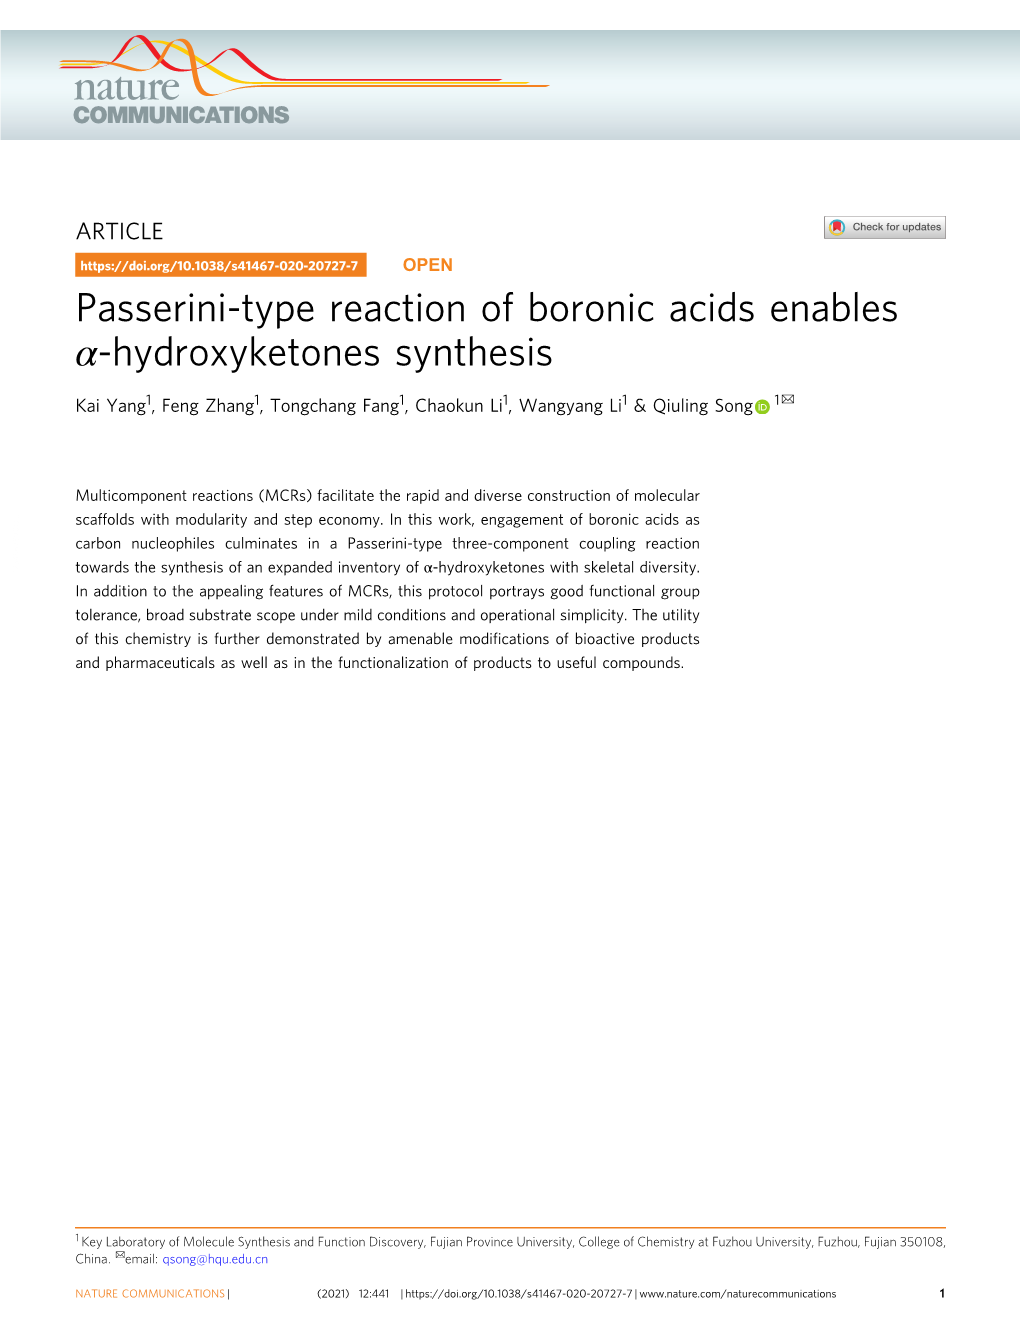 Passerini-Type Reaction of Boronic Acids Enables Î±-Hydroxyketones